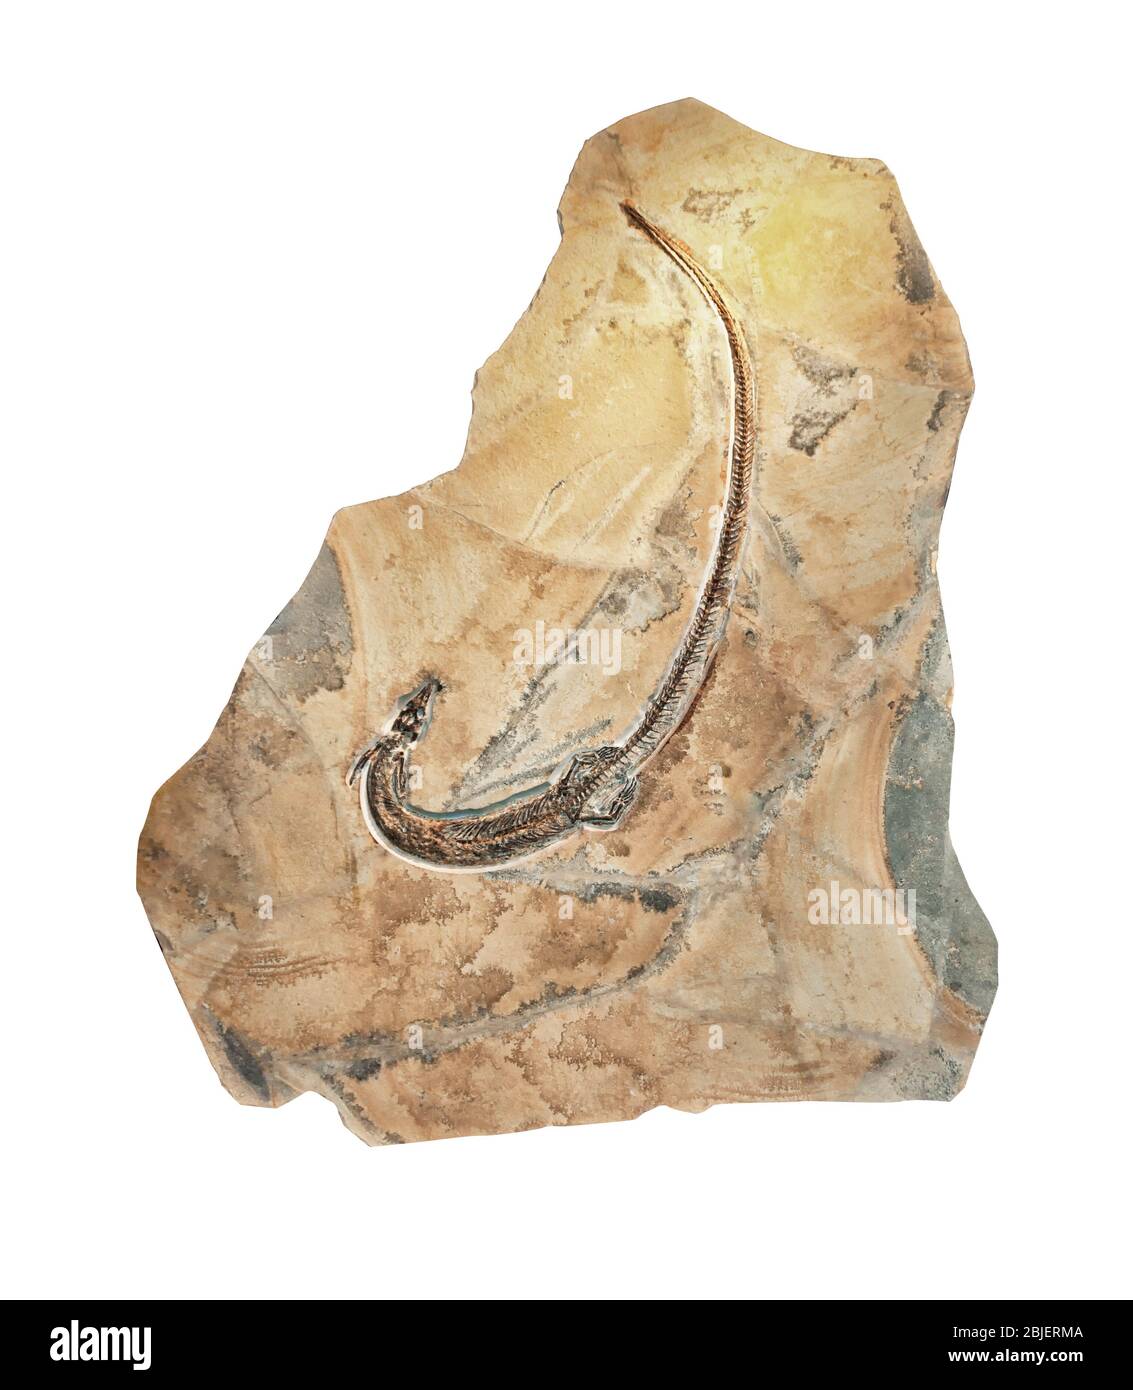 Pleurosaurus Goldfussi fossile, cousin de la tuatara, lié aux lézards, de la fin Jurassique. Isolé sur fond blanc. Banque D'Images